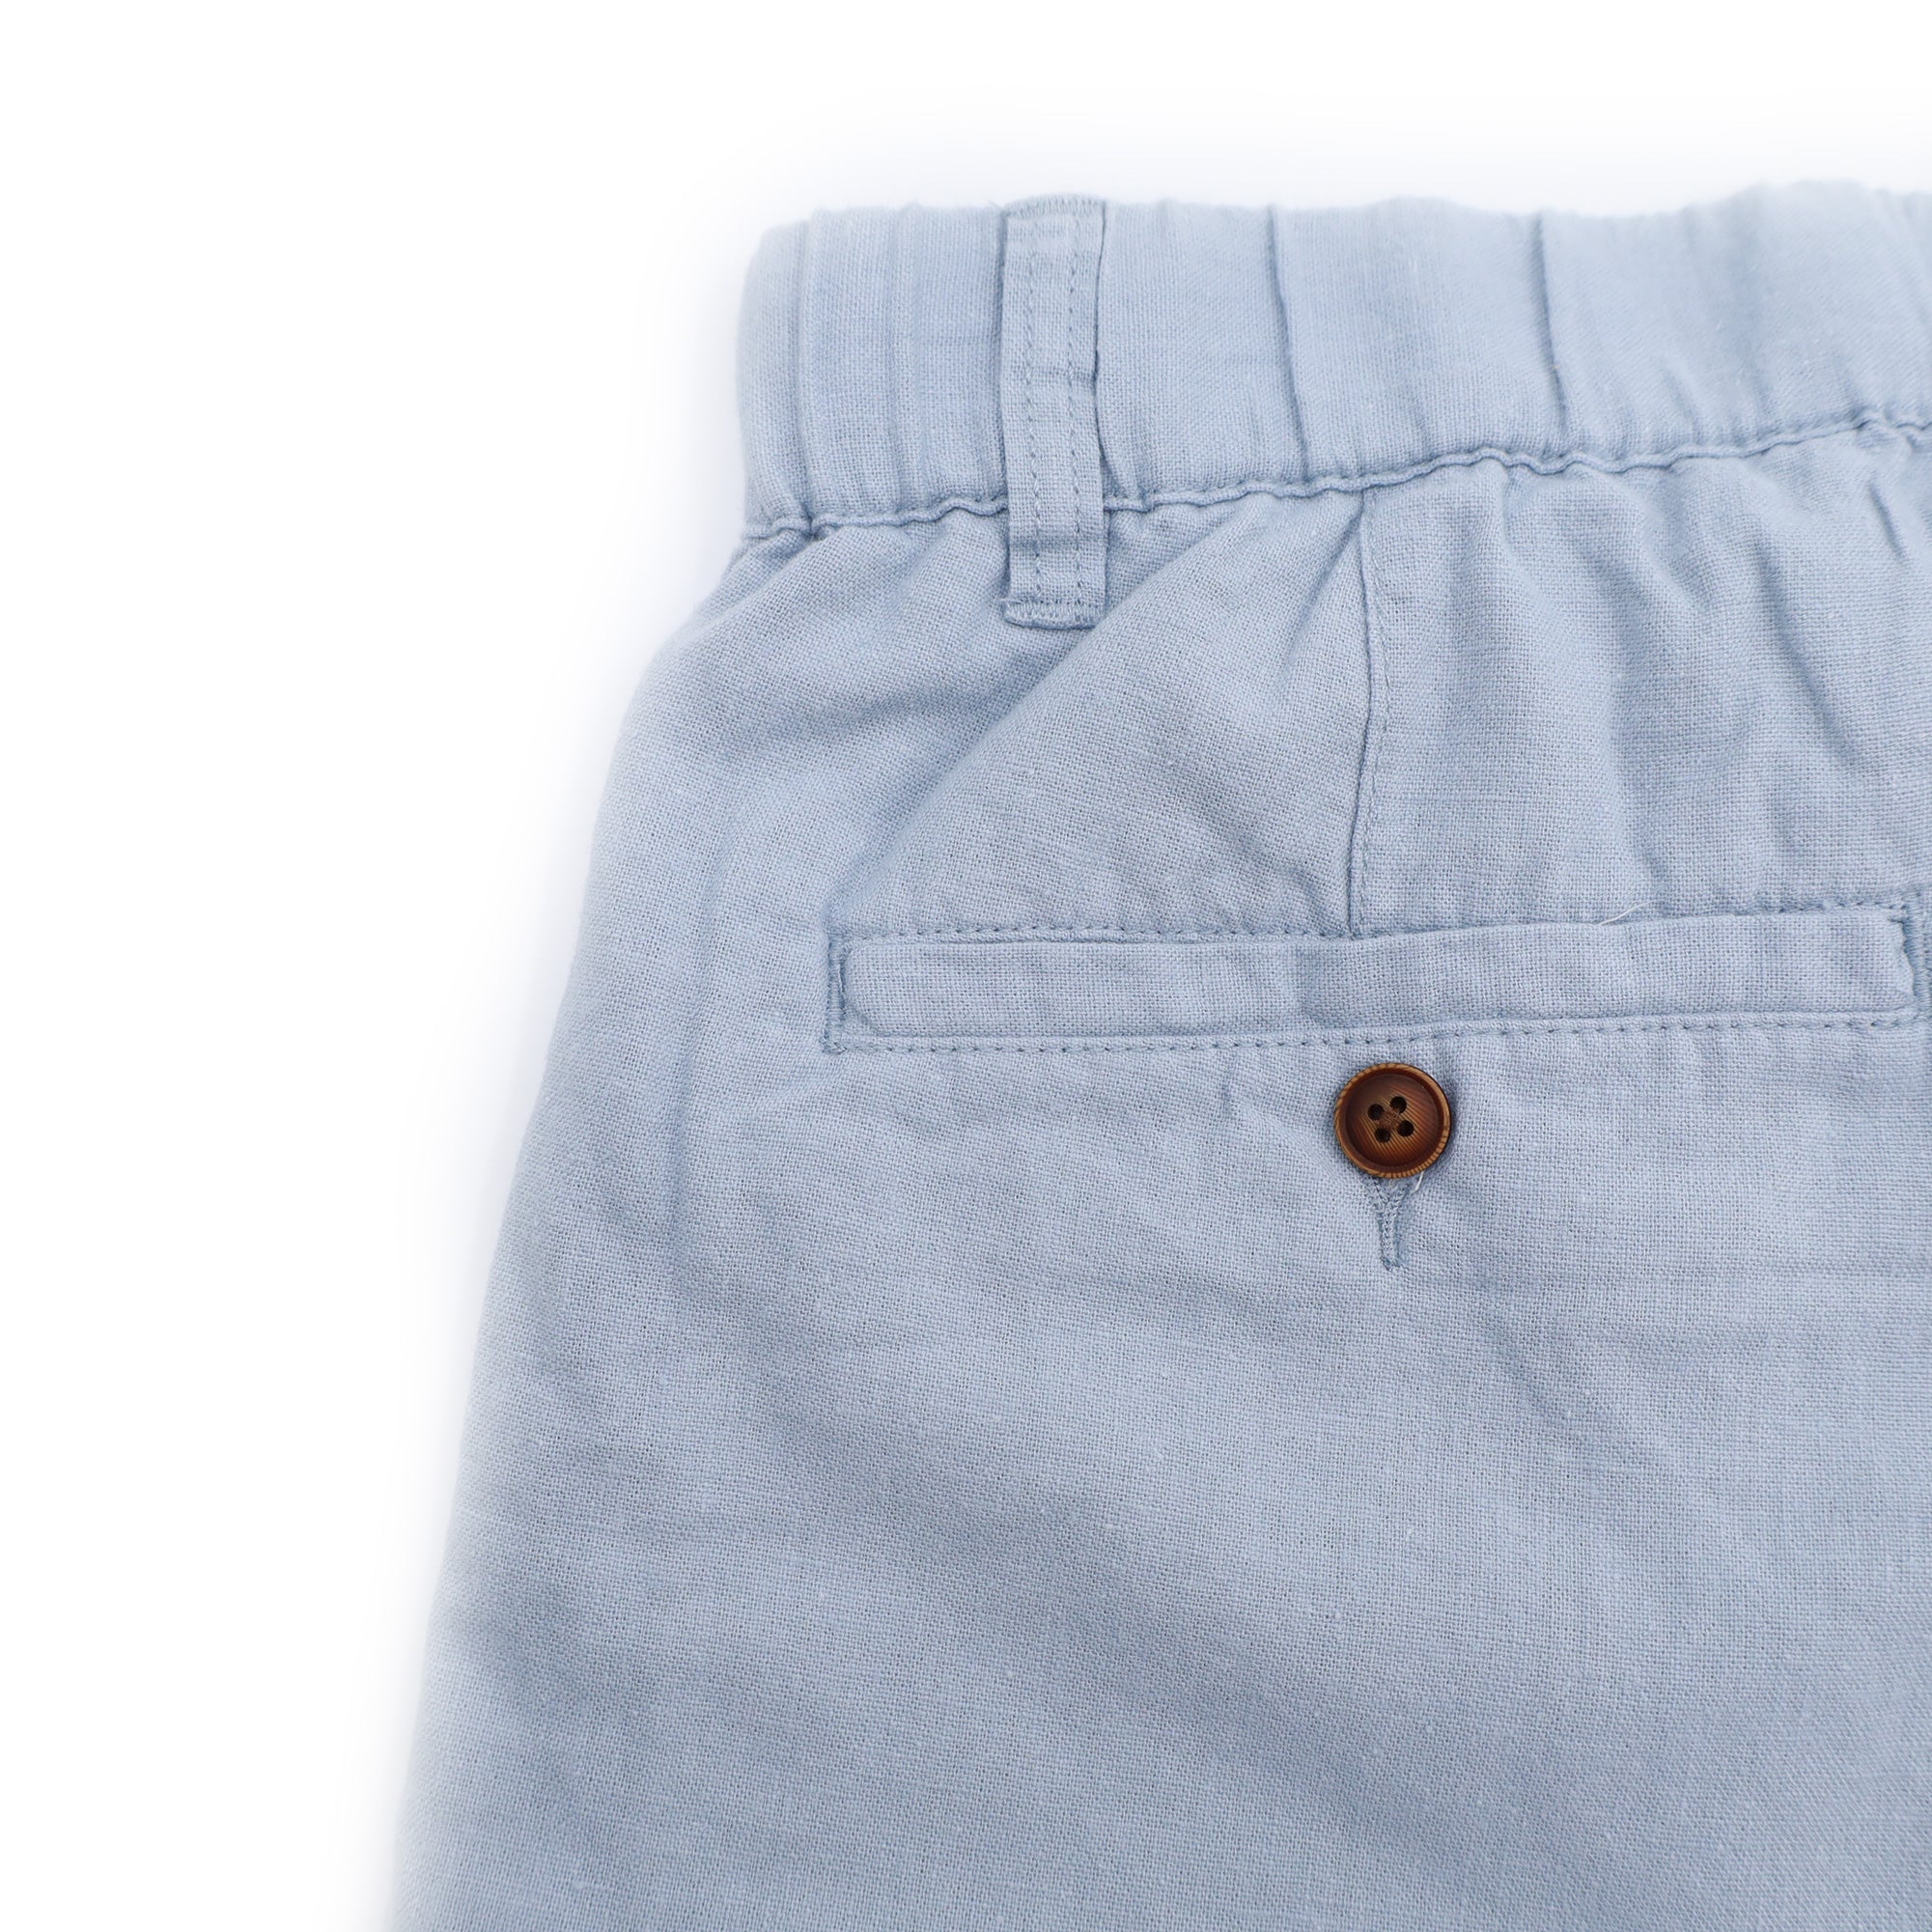 Men's Cotton Linen Mid-rise Bermuda Shorts Pants